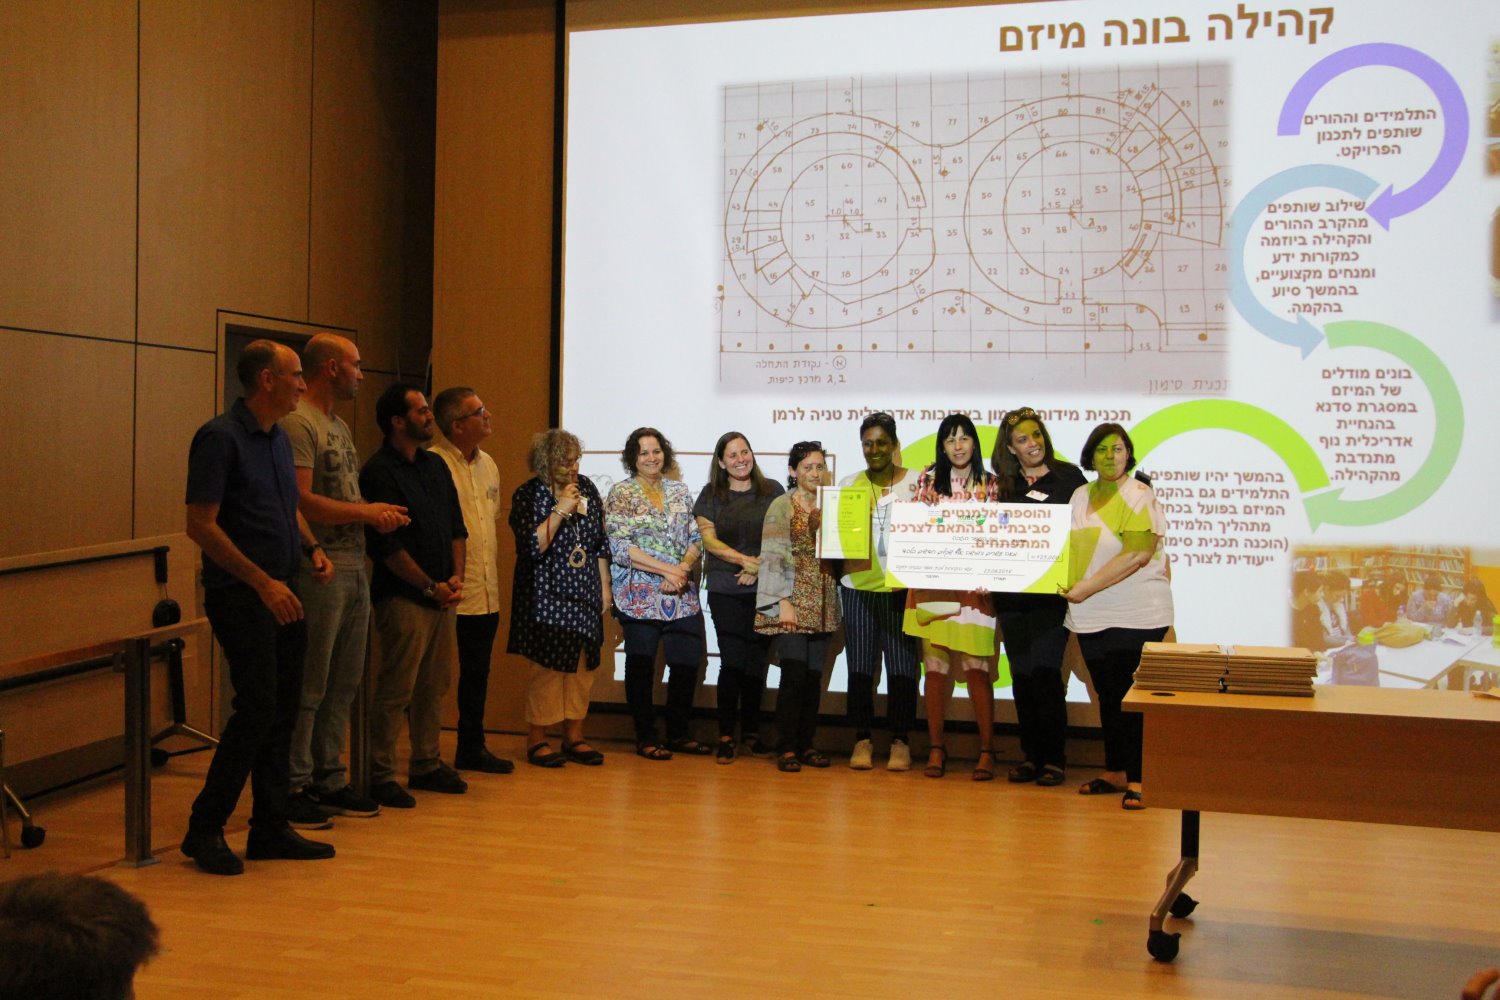 זוכים בתחרות בתי ספר המועצה הישראלית לבניה ירוקה, משרד החינוך והמשרד להגנת הסביבה - צילום יחצ